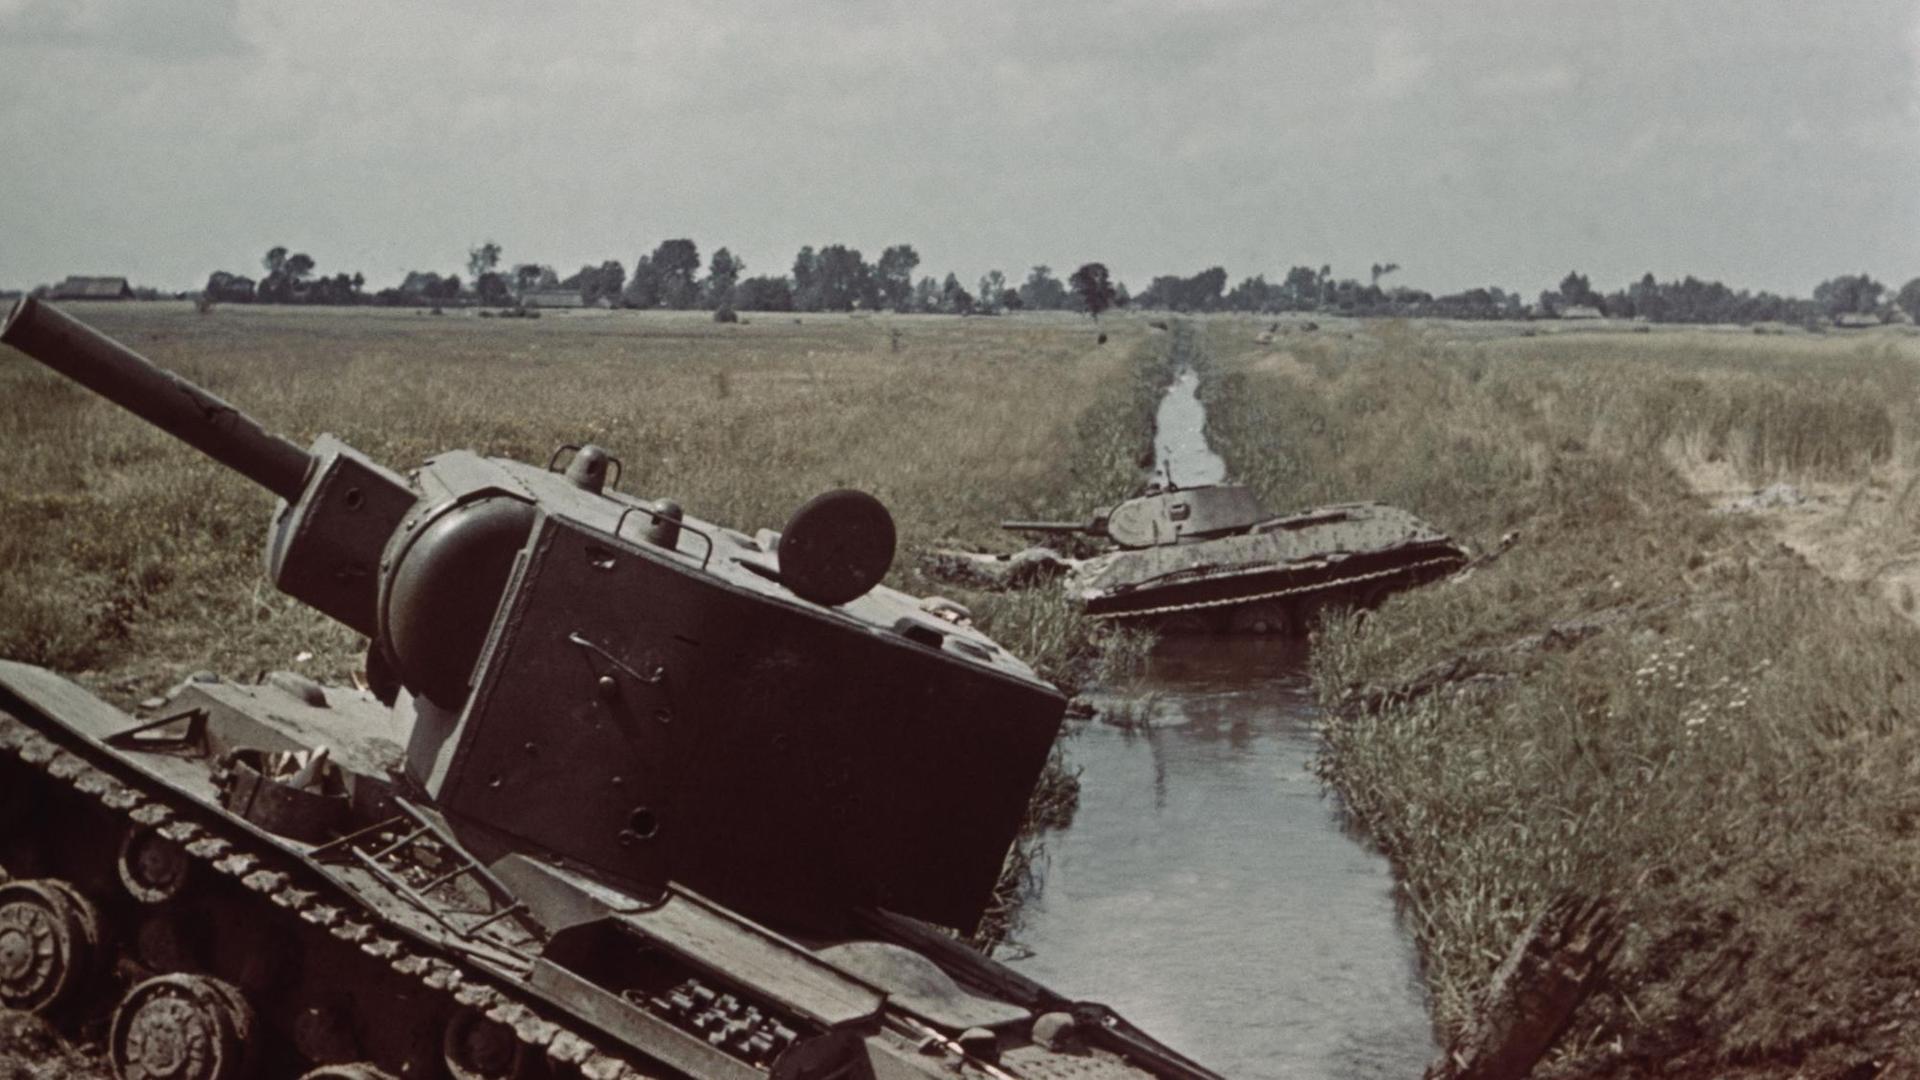 Ein historisches Farbfoto zeigt die Trümmer zweier Panzer an der Böschung eines Kanals